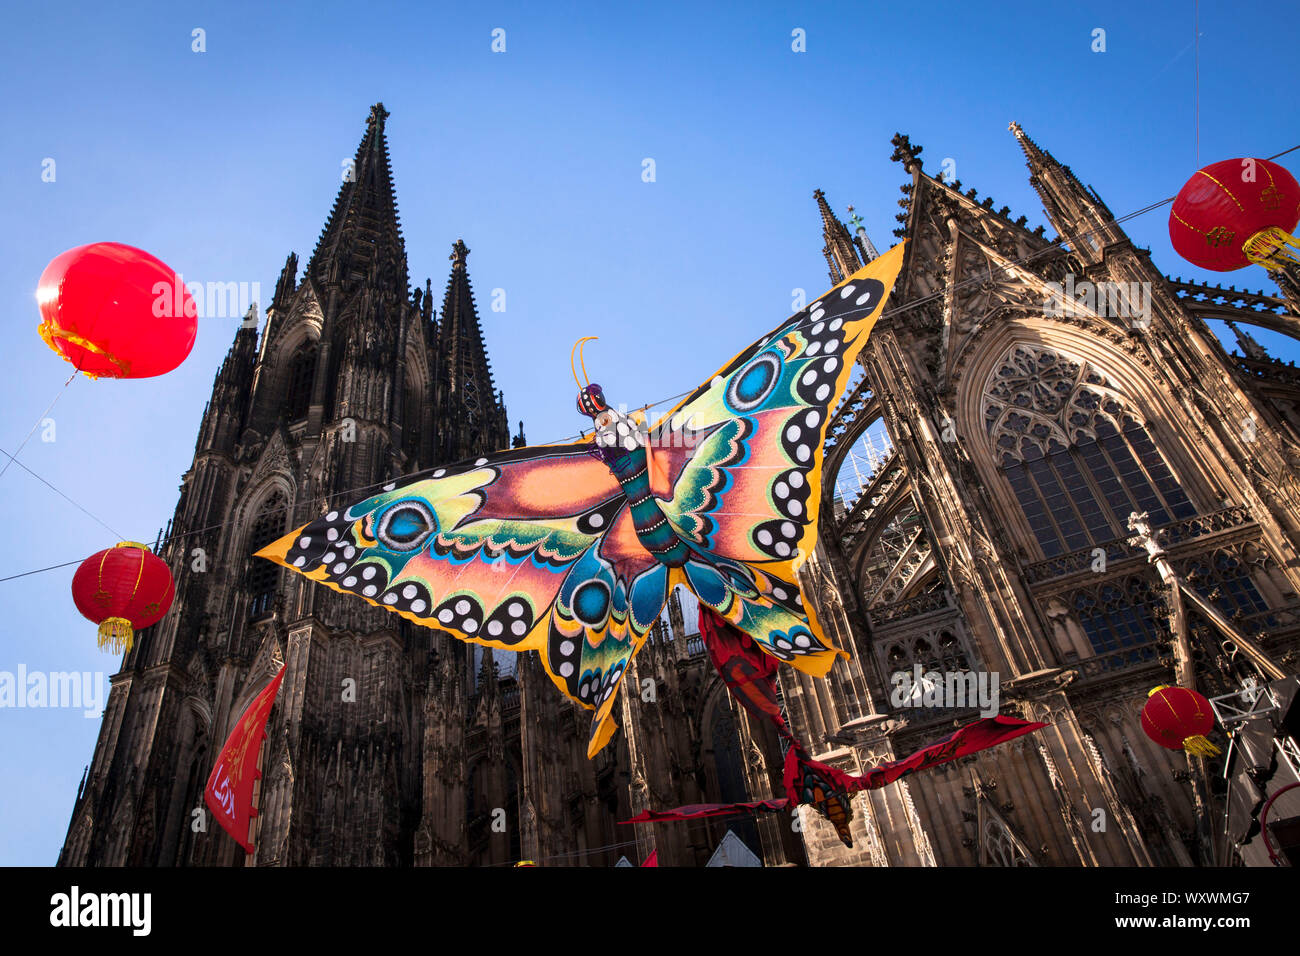 China Festival auf Roncalli Platz an der Kathedrale, Schmetterling als  Dekoration, Köln, Deutschland. Chinafest auf dem Roncalliplatz am Dom,  Schmetterling Stockfotografie - Alamy